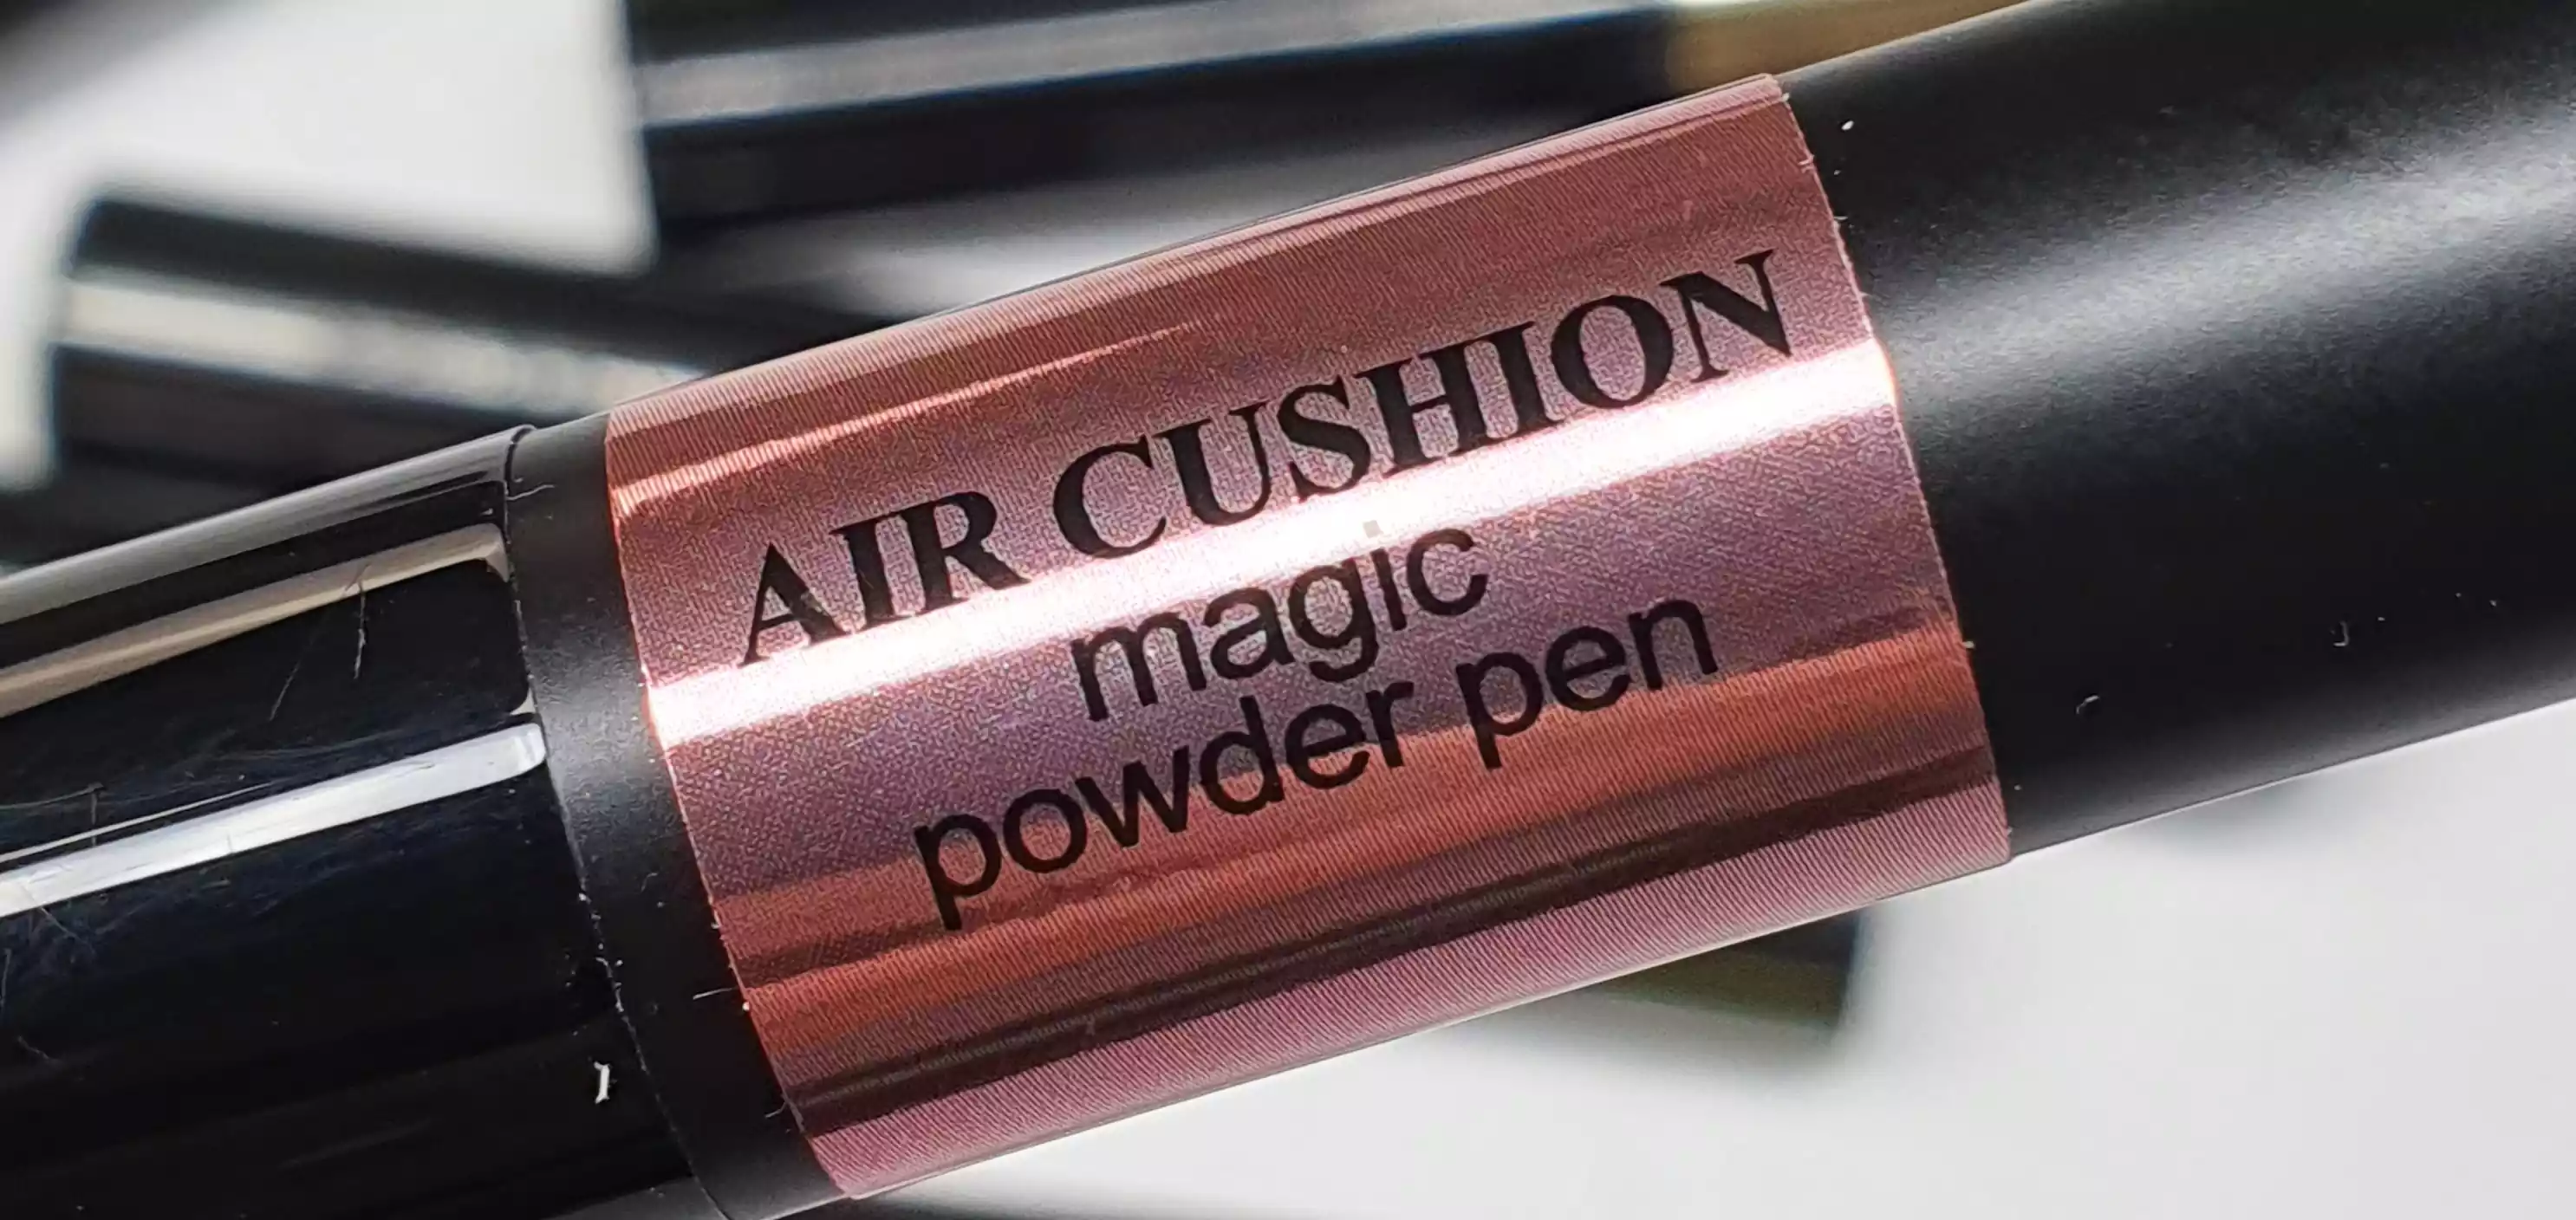 Air Cushion Pigment Pens